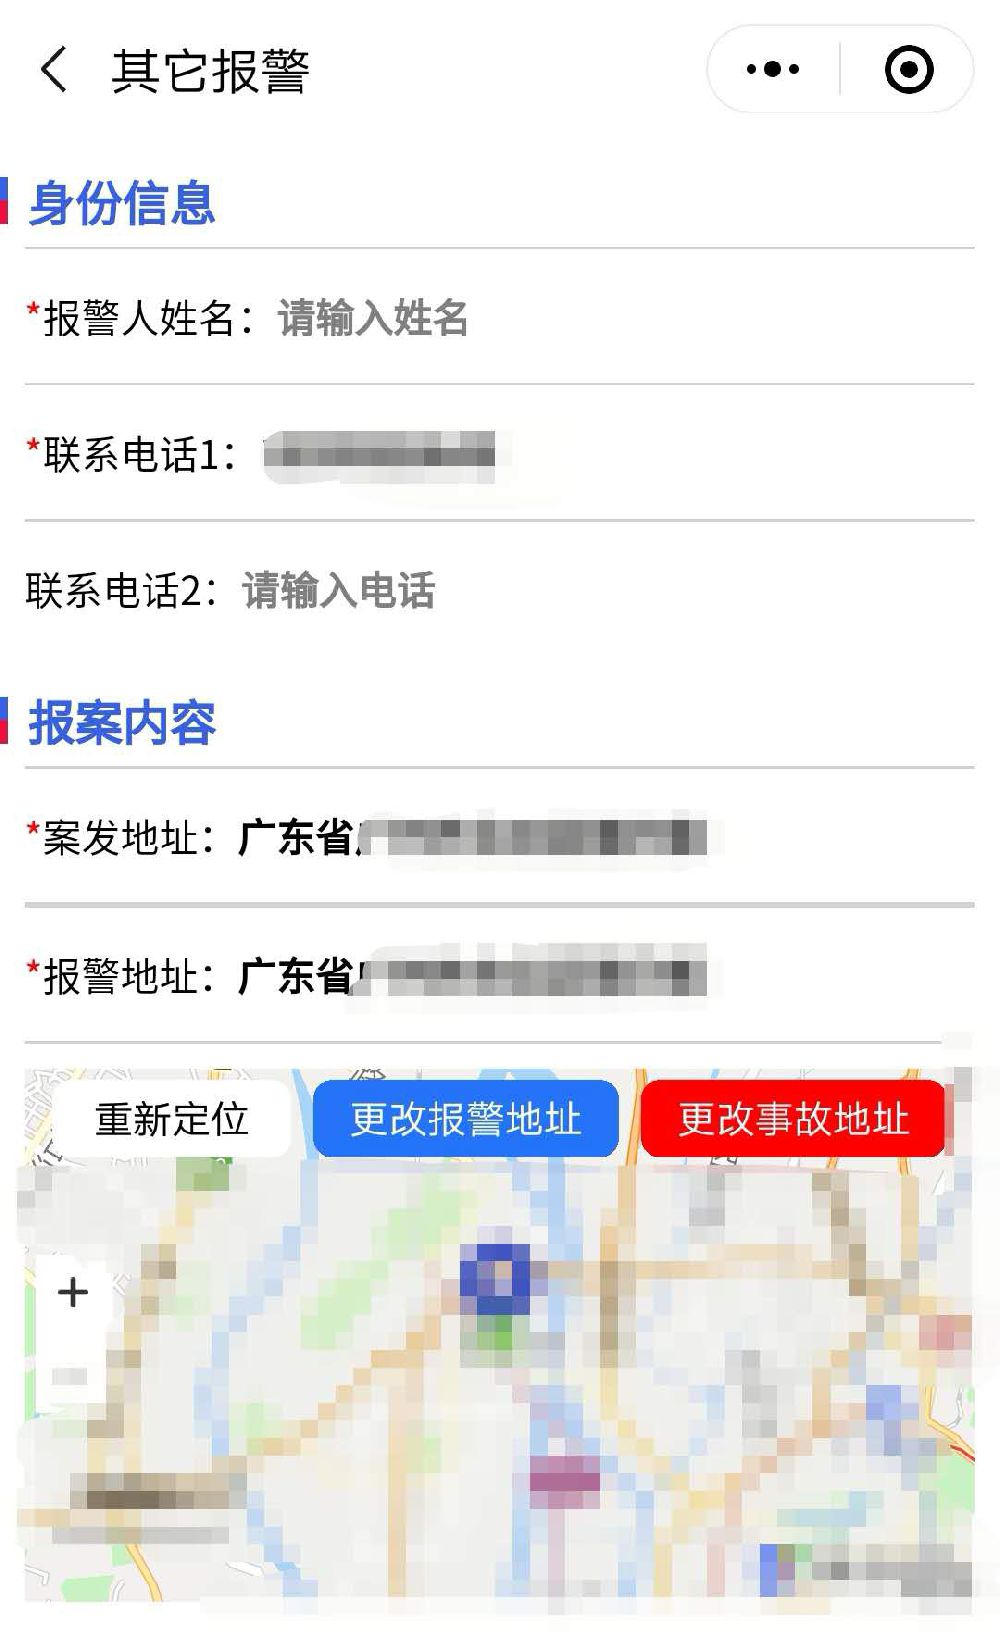 广东110小程序自助报警操作指南 可添加视频